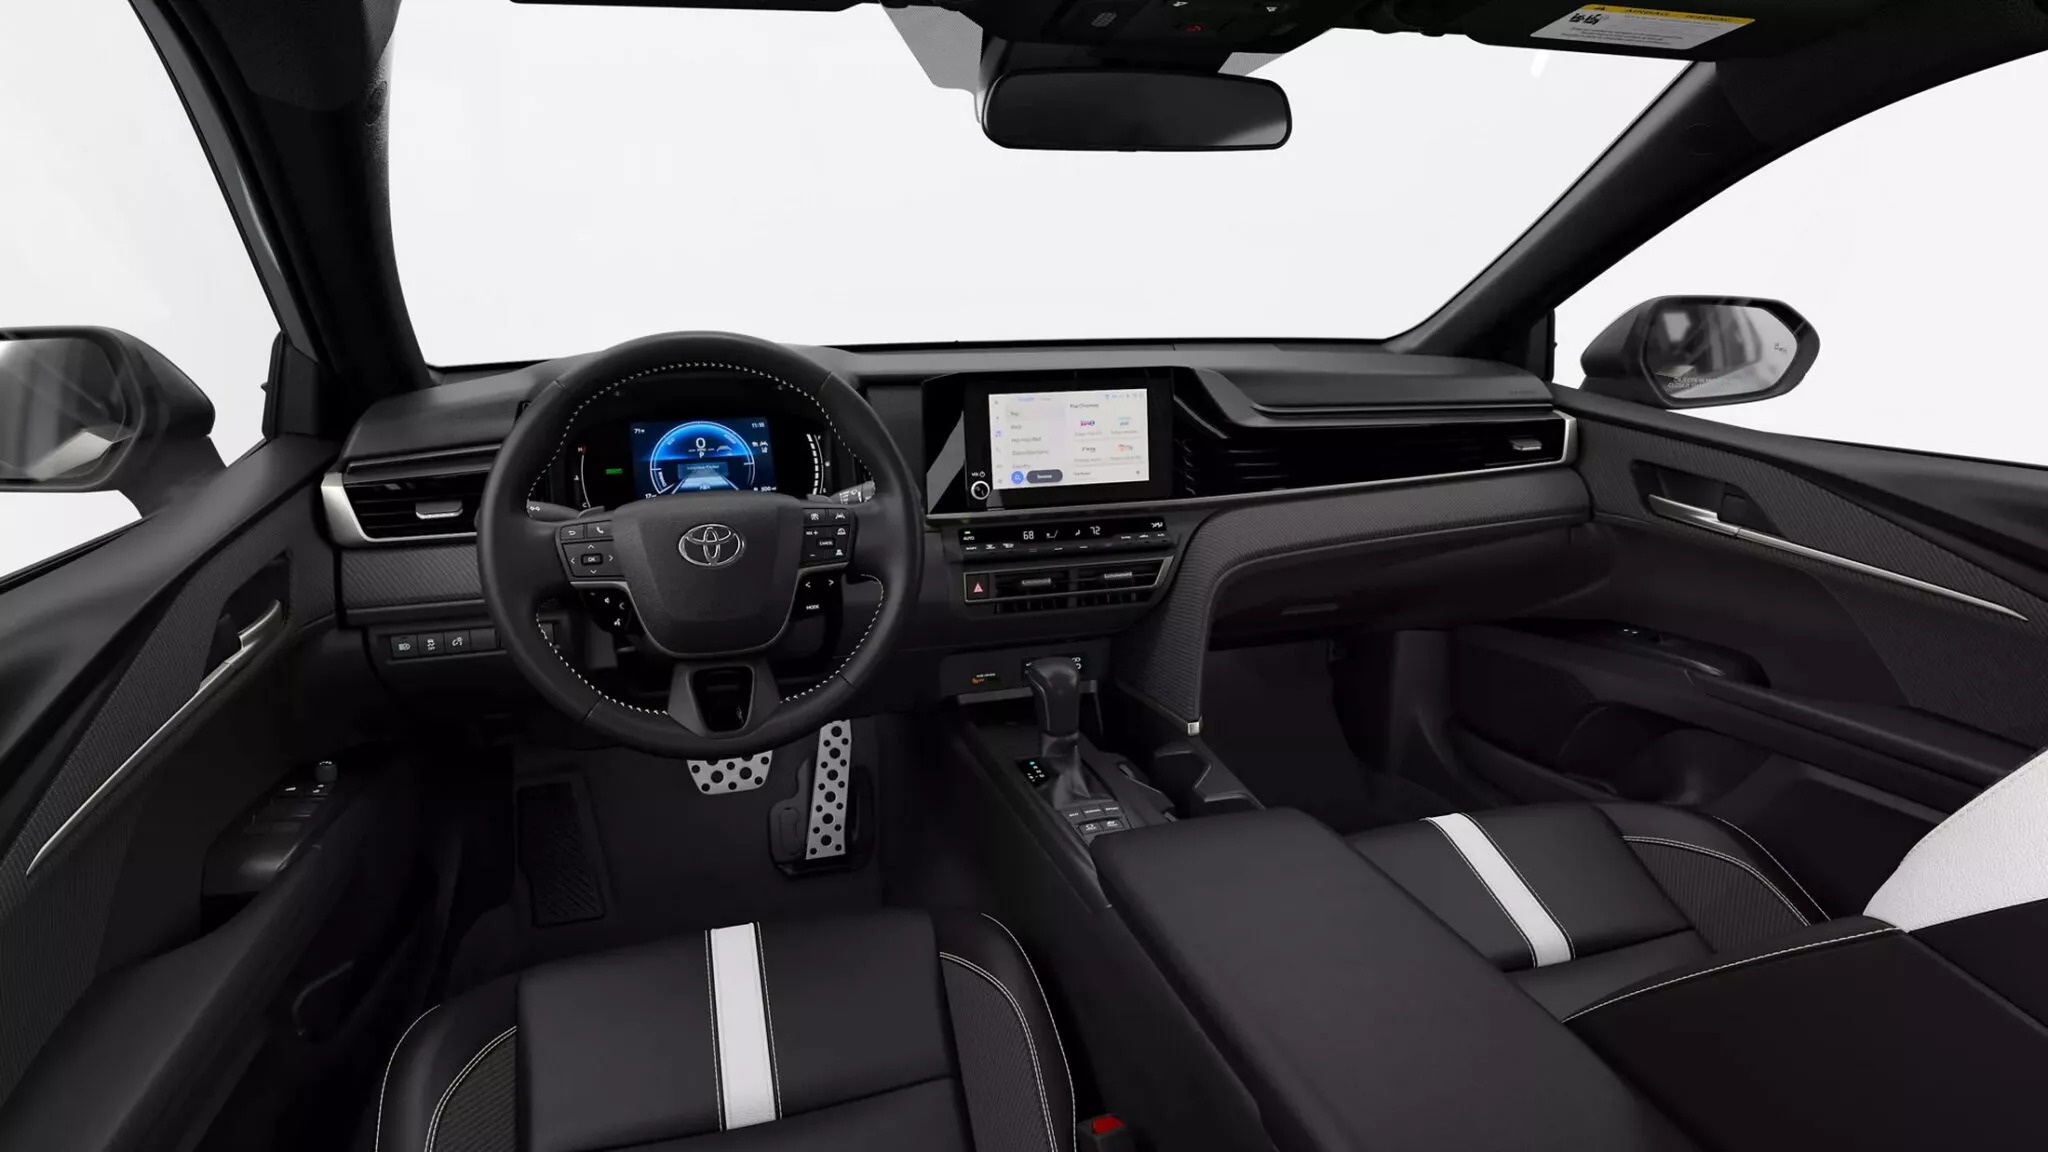 Toyota Camry đời mới chốt giá: Khởi điểm đắt hơn hàng chục triệu đồng nhưng rẻ hơn khi so với bản hybrid cũ - ảnh 5